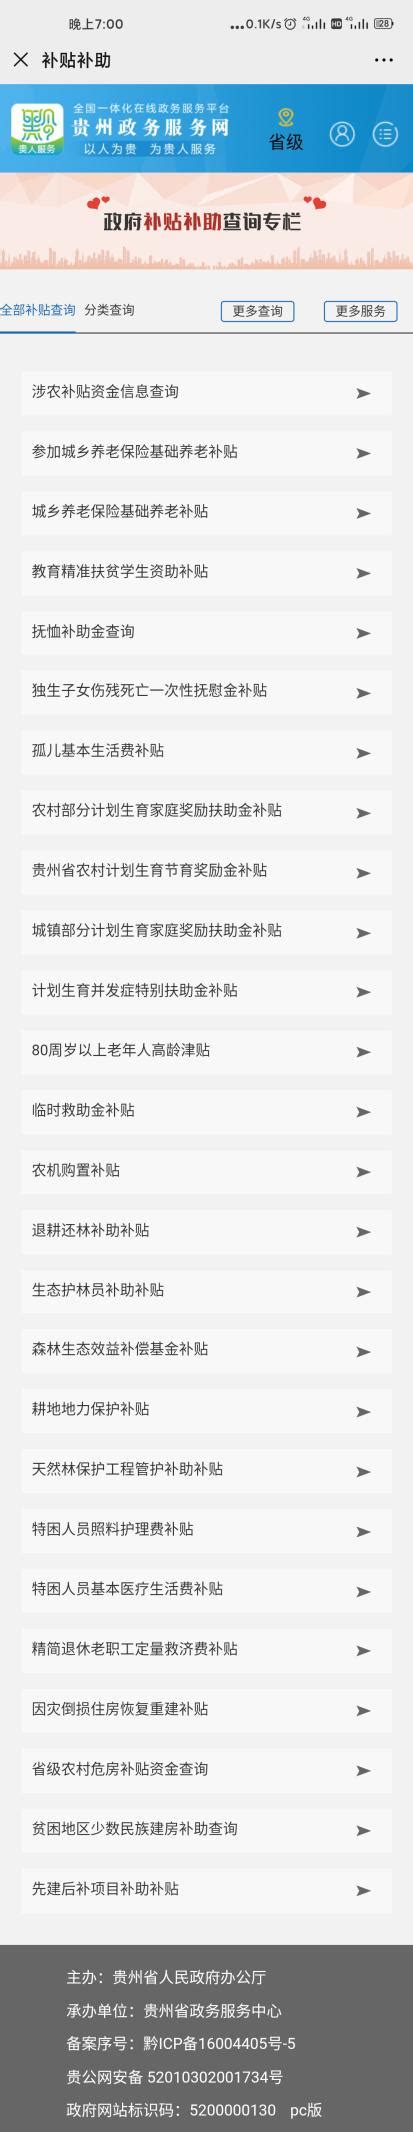 贵州电子政务网app下载-贵州省电子政务移动办事平台下载v1.0 安卓版-绿色资源网